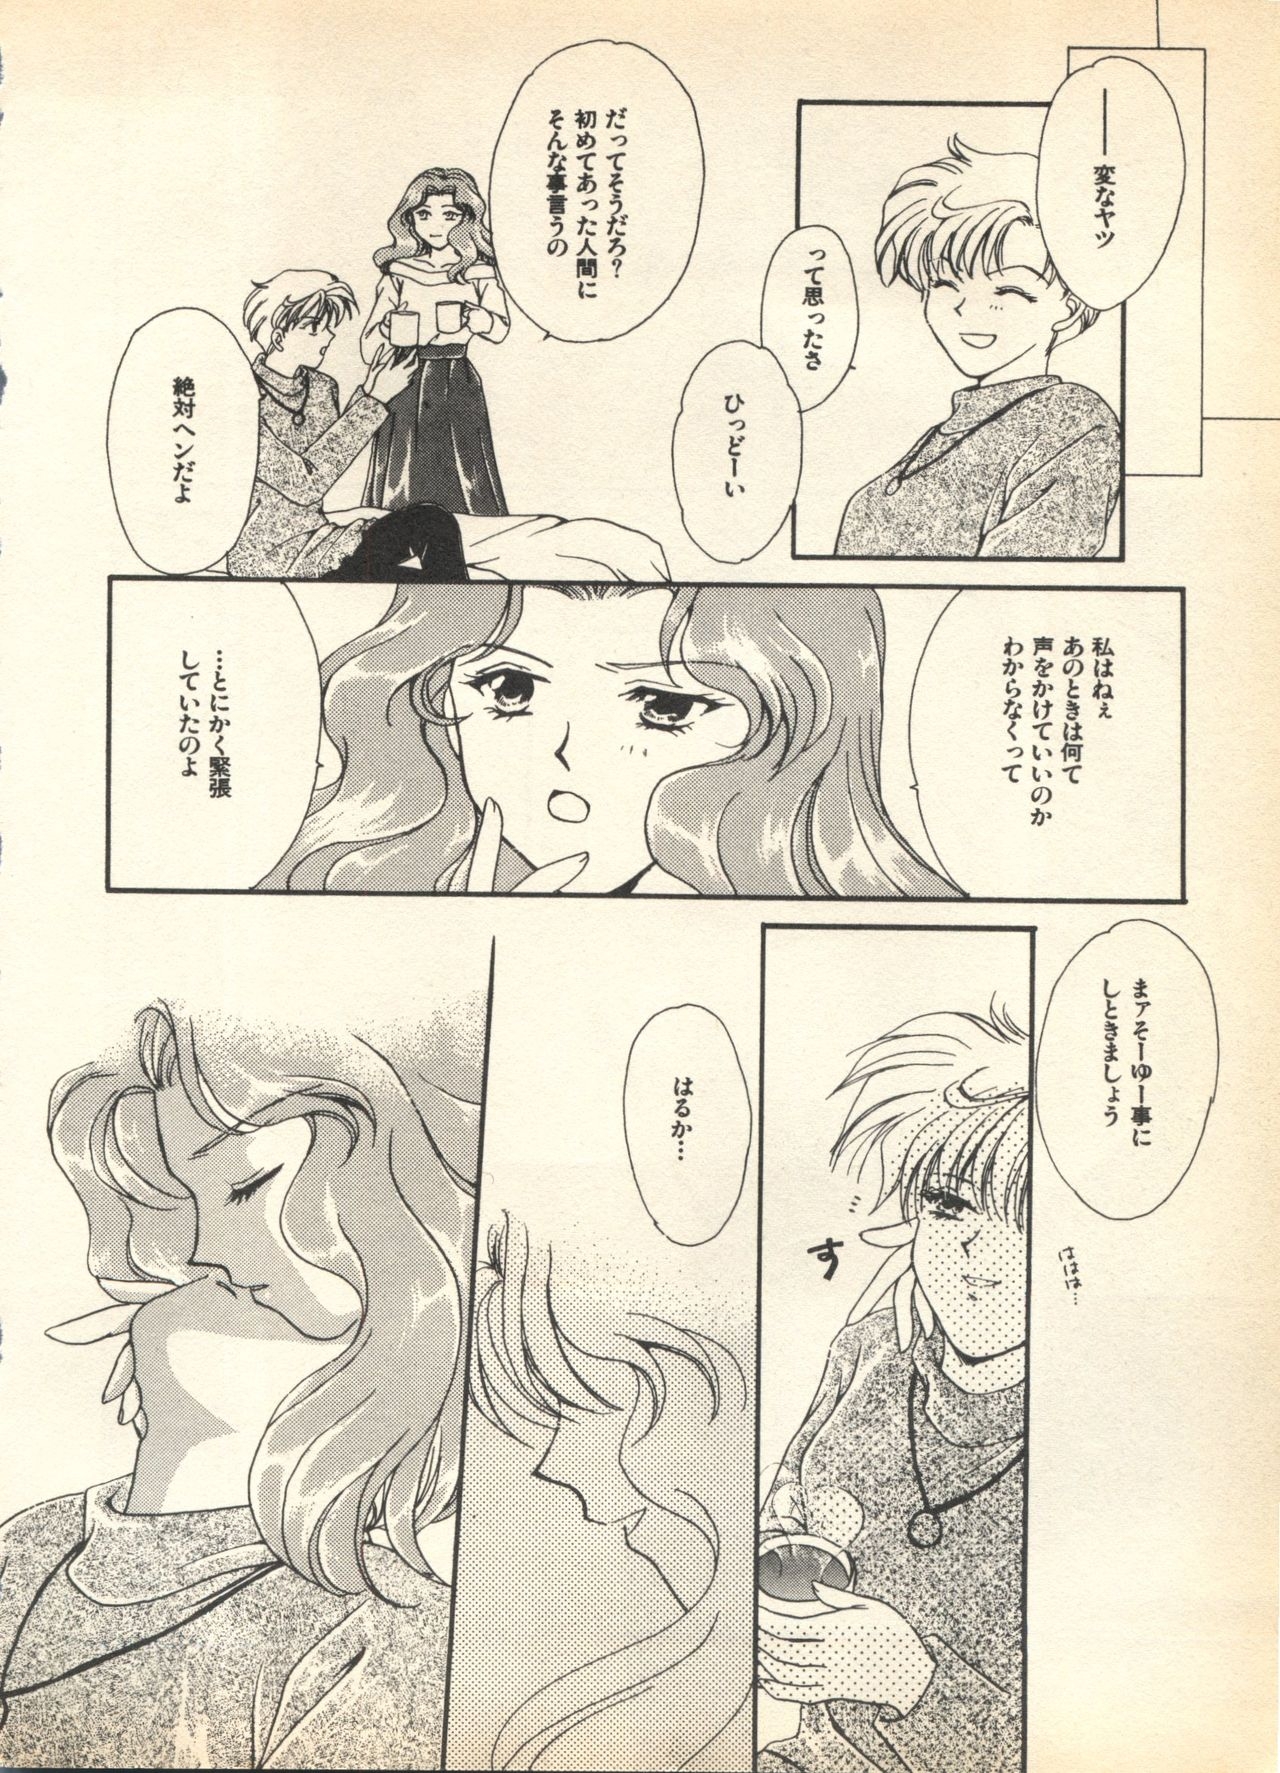 [Anthology] Lunatic Party 7 (Bishoujo Senshi Sailor Moon) 187